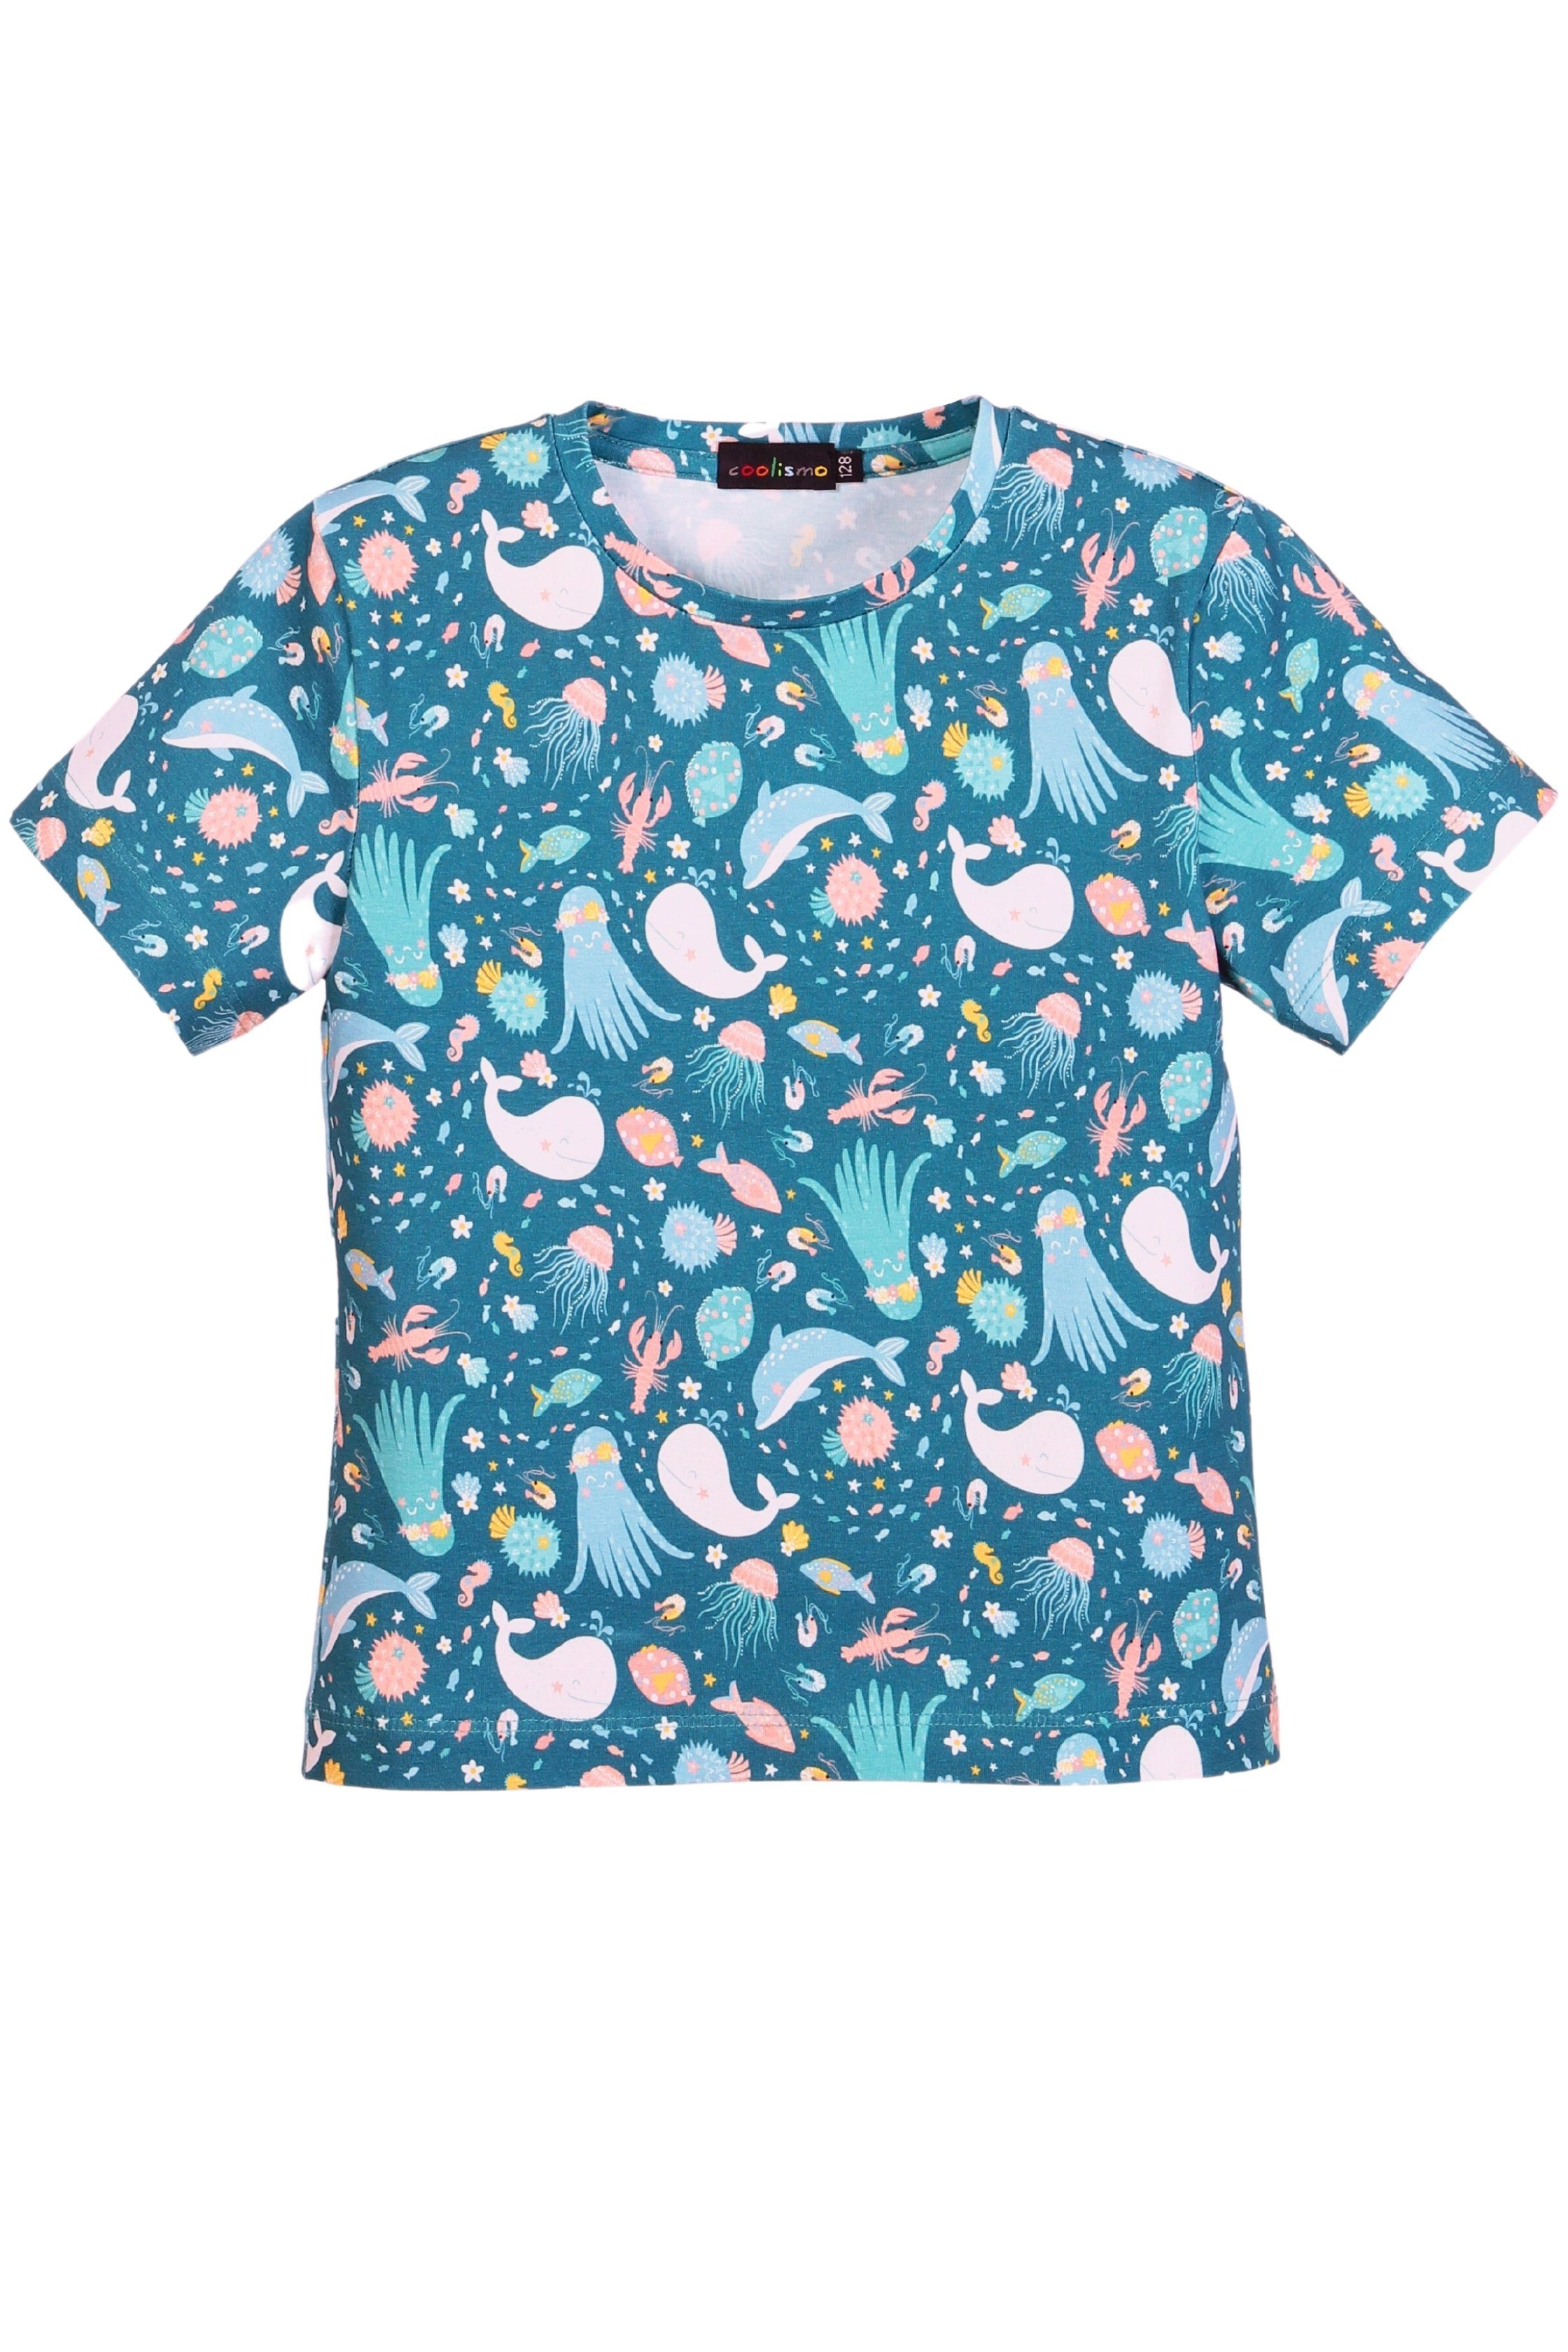 coolismo T-Shirt Print-Shirt für Mädchen "Kleine Alloverprint, Baumwolle, Meereswelt" europäische Produktion